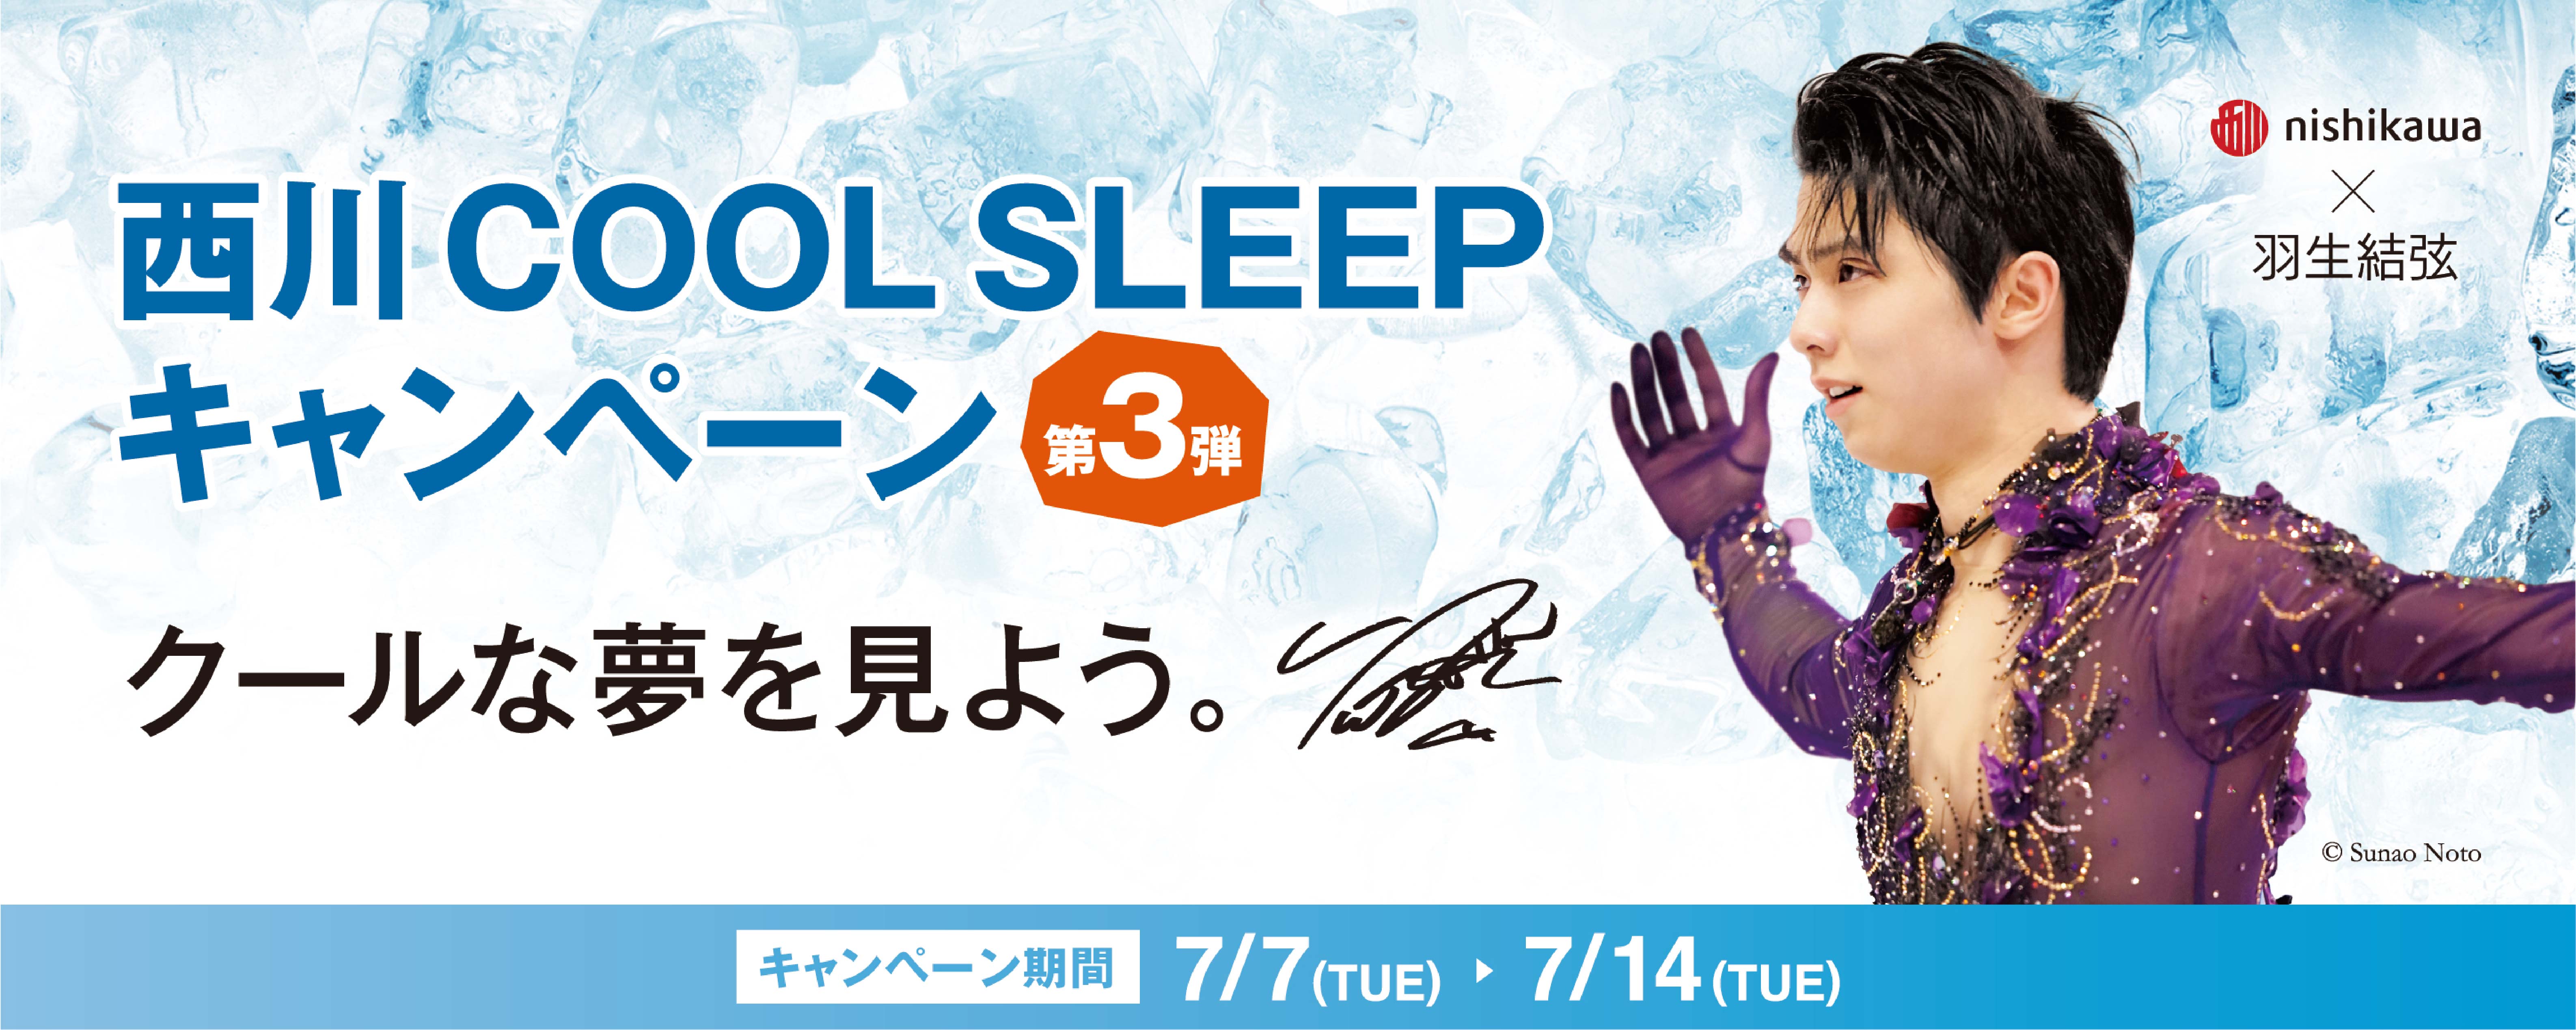 羽生結弦選手を起用した『西川 COOL SLEEP キャンペーン第3弾 